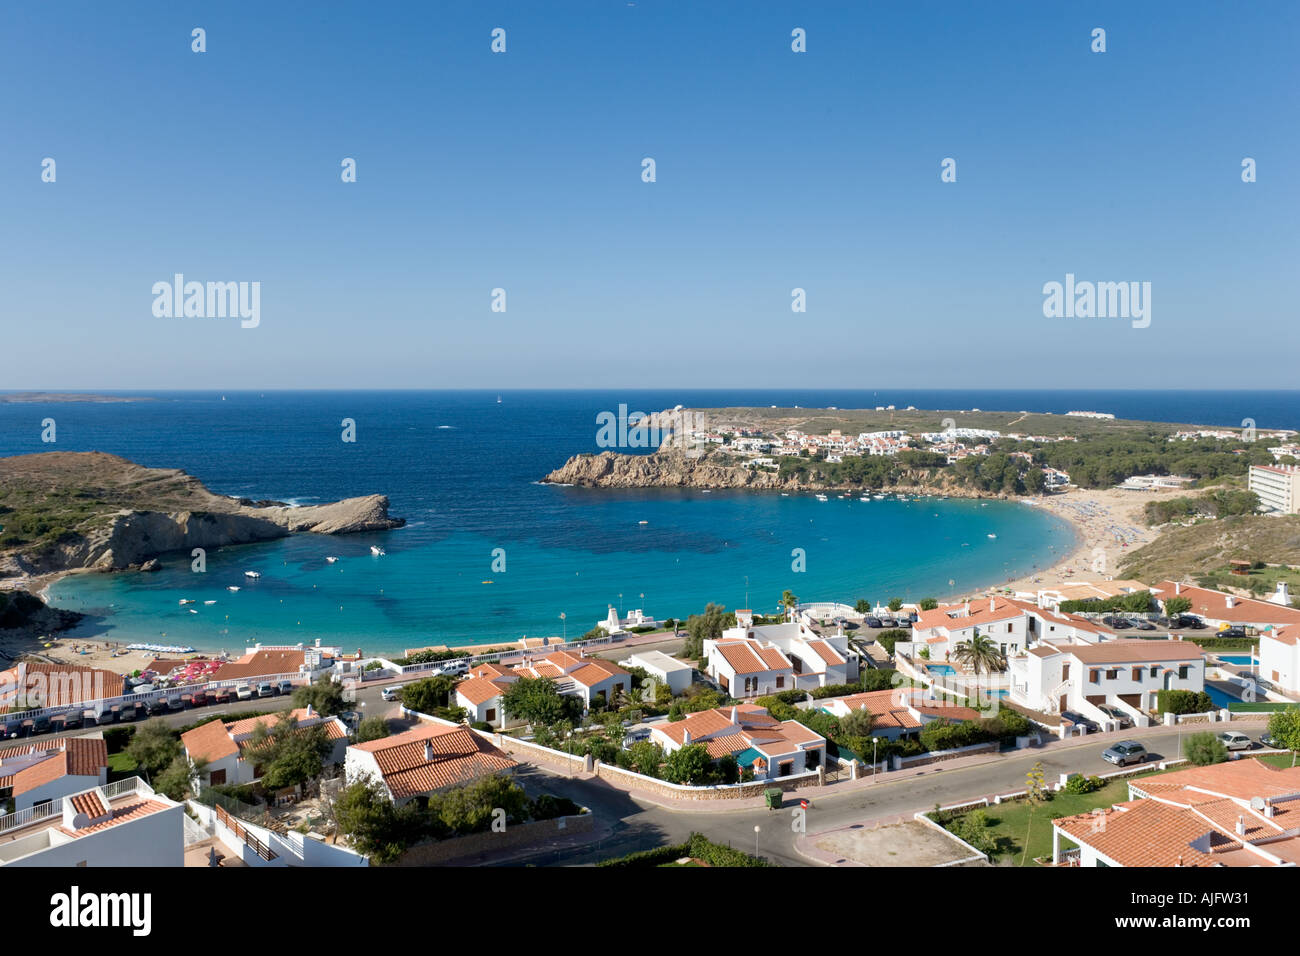 Modern development and beach at Arenal d'en Castell, Menorca, Spain Stock Photo